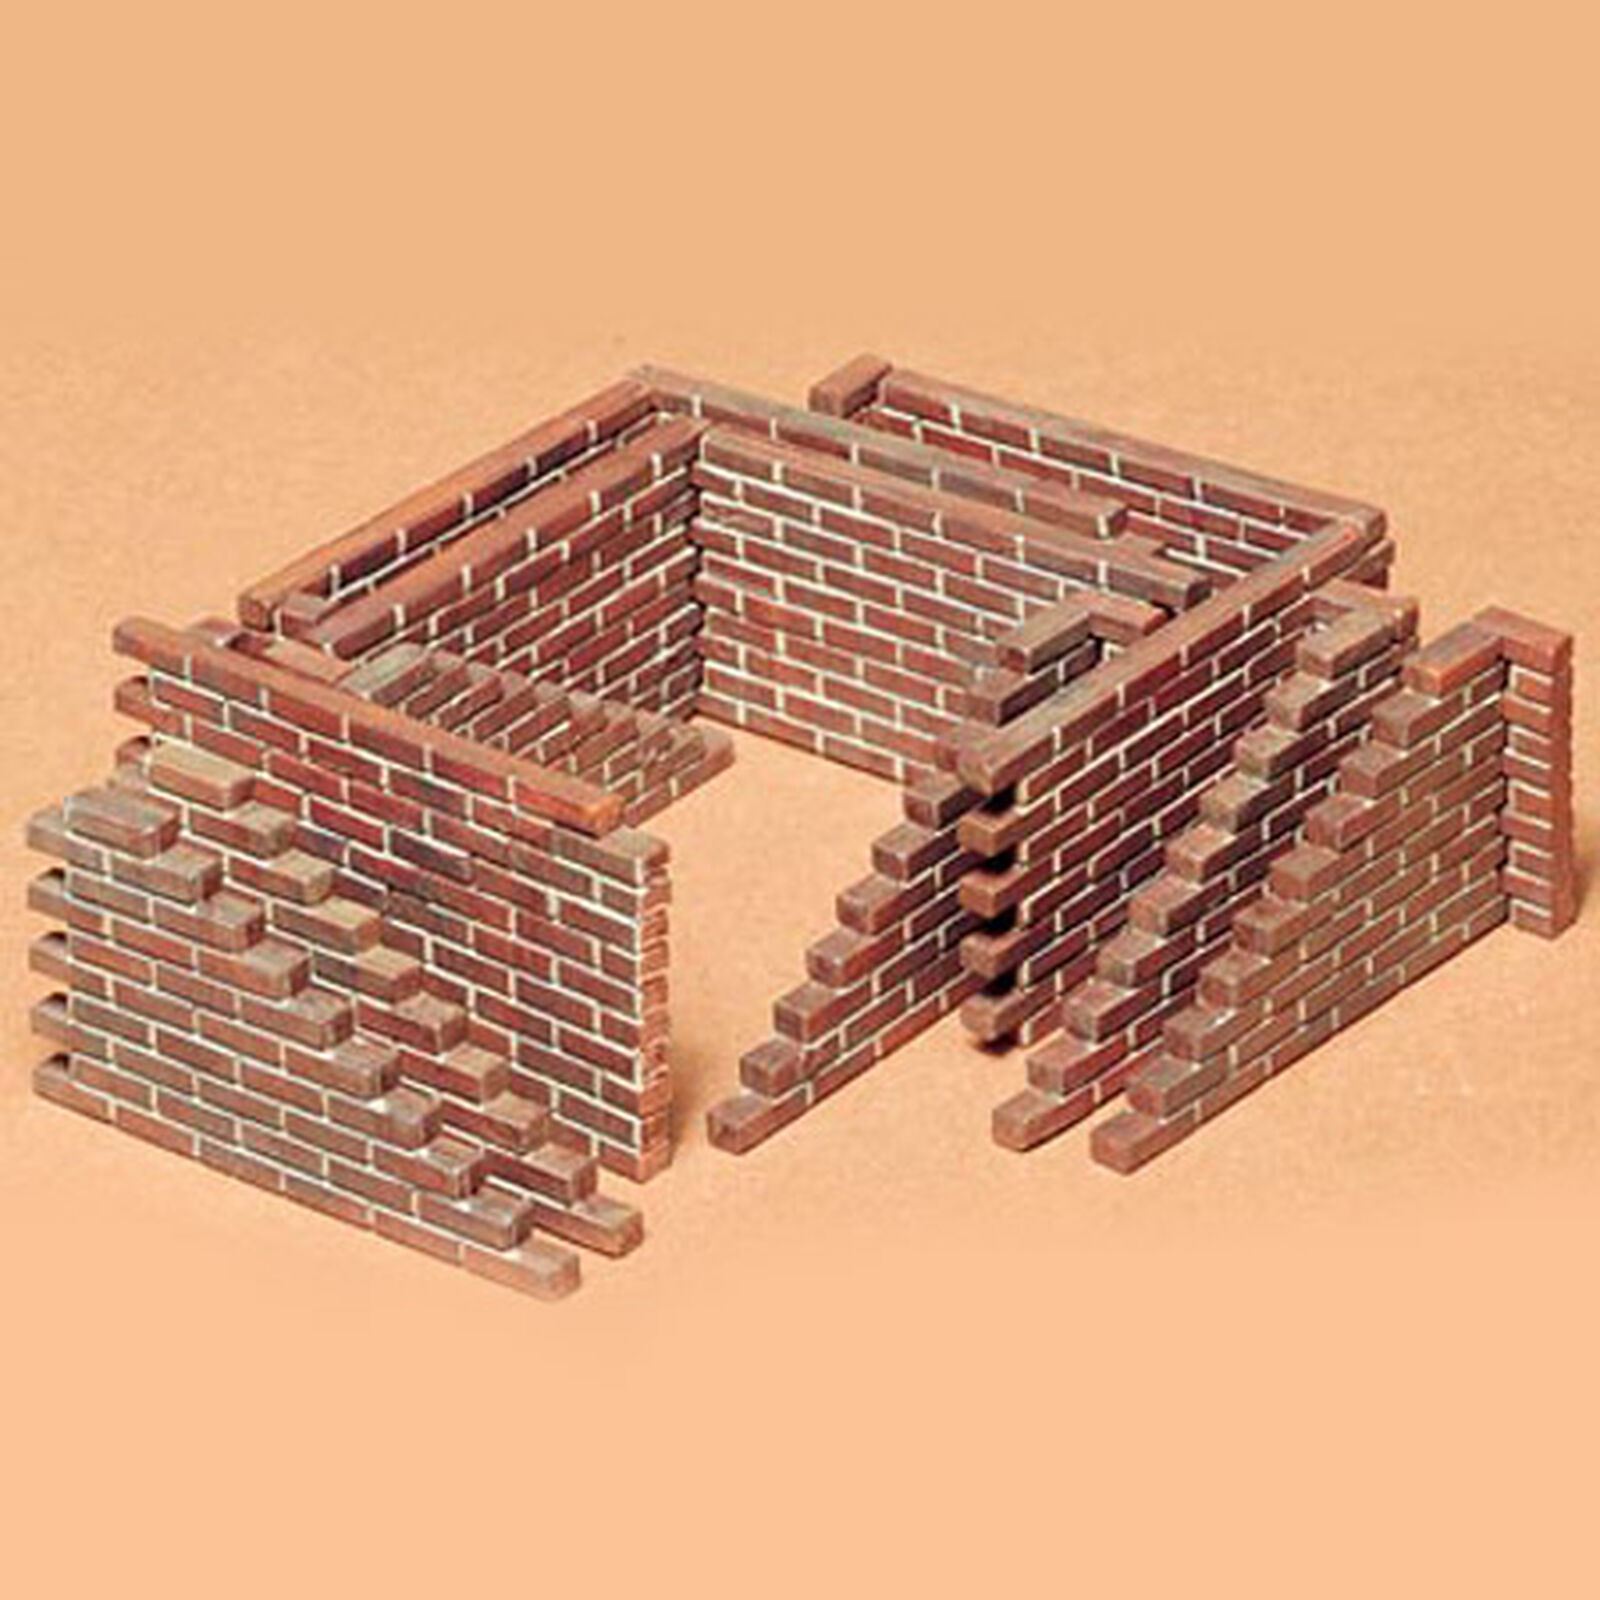 1/35 Brick Wall Set